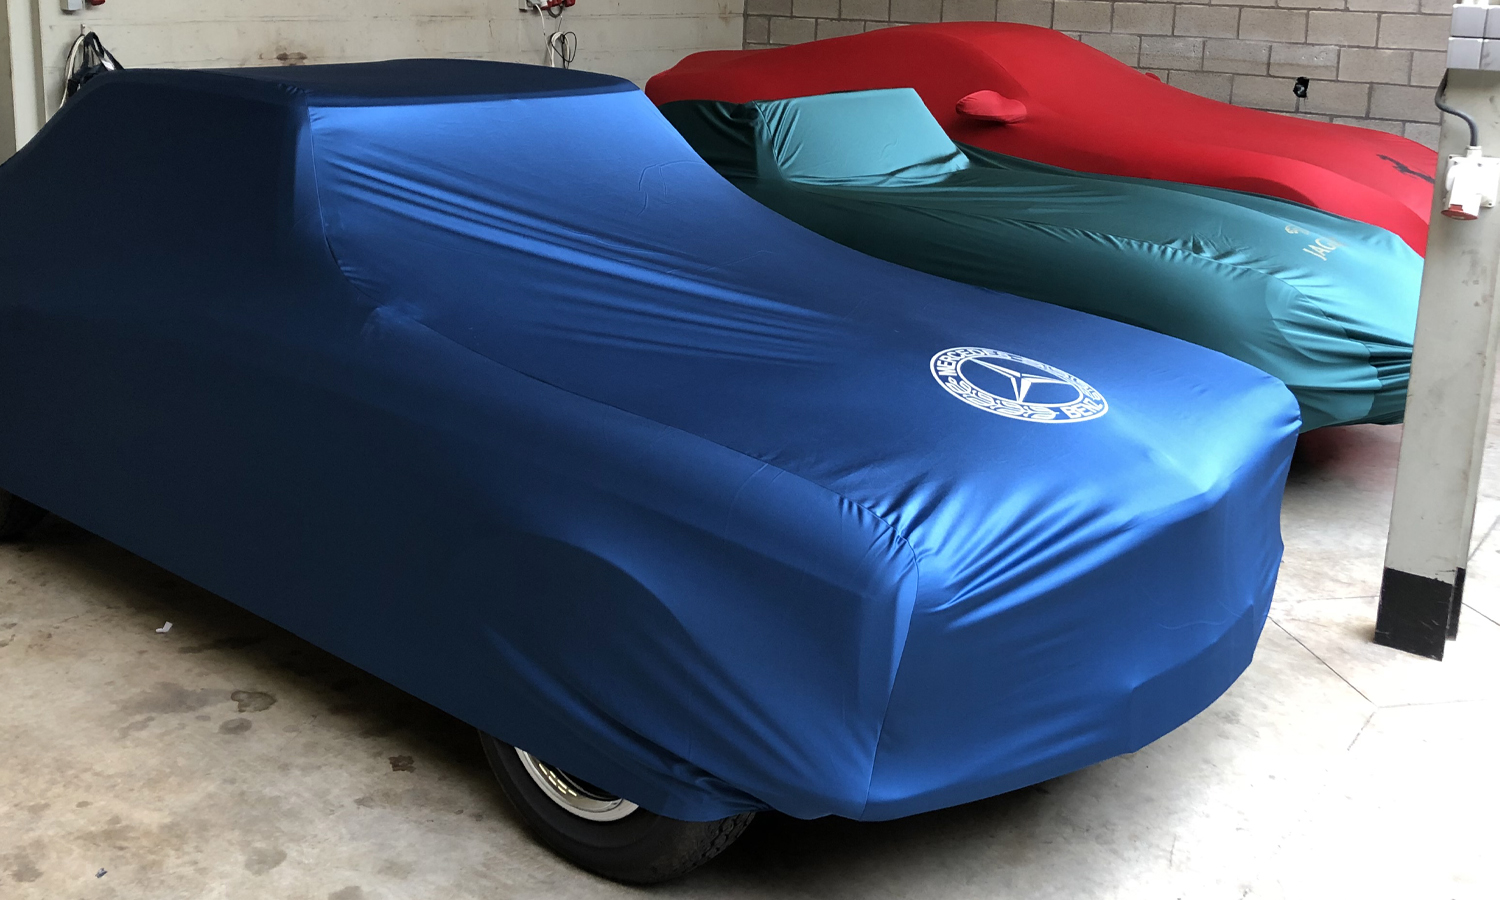 Hochwertig Atmungsaktiv Innen Auto Abdeckung - Blau - Für Rover Mini ( Xn )